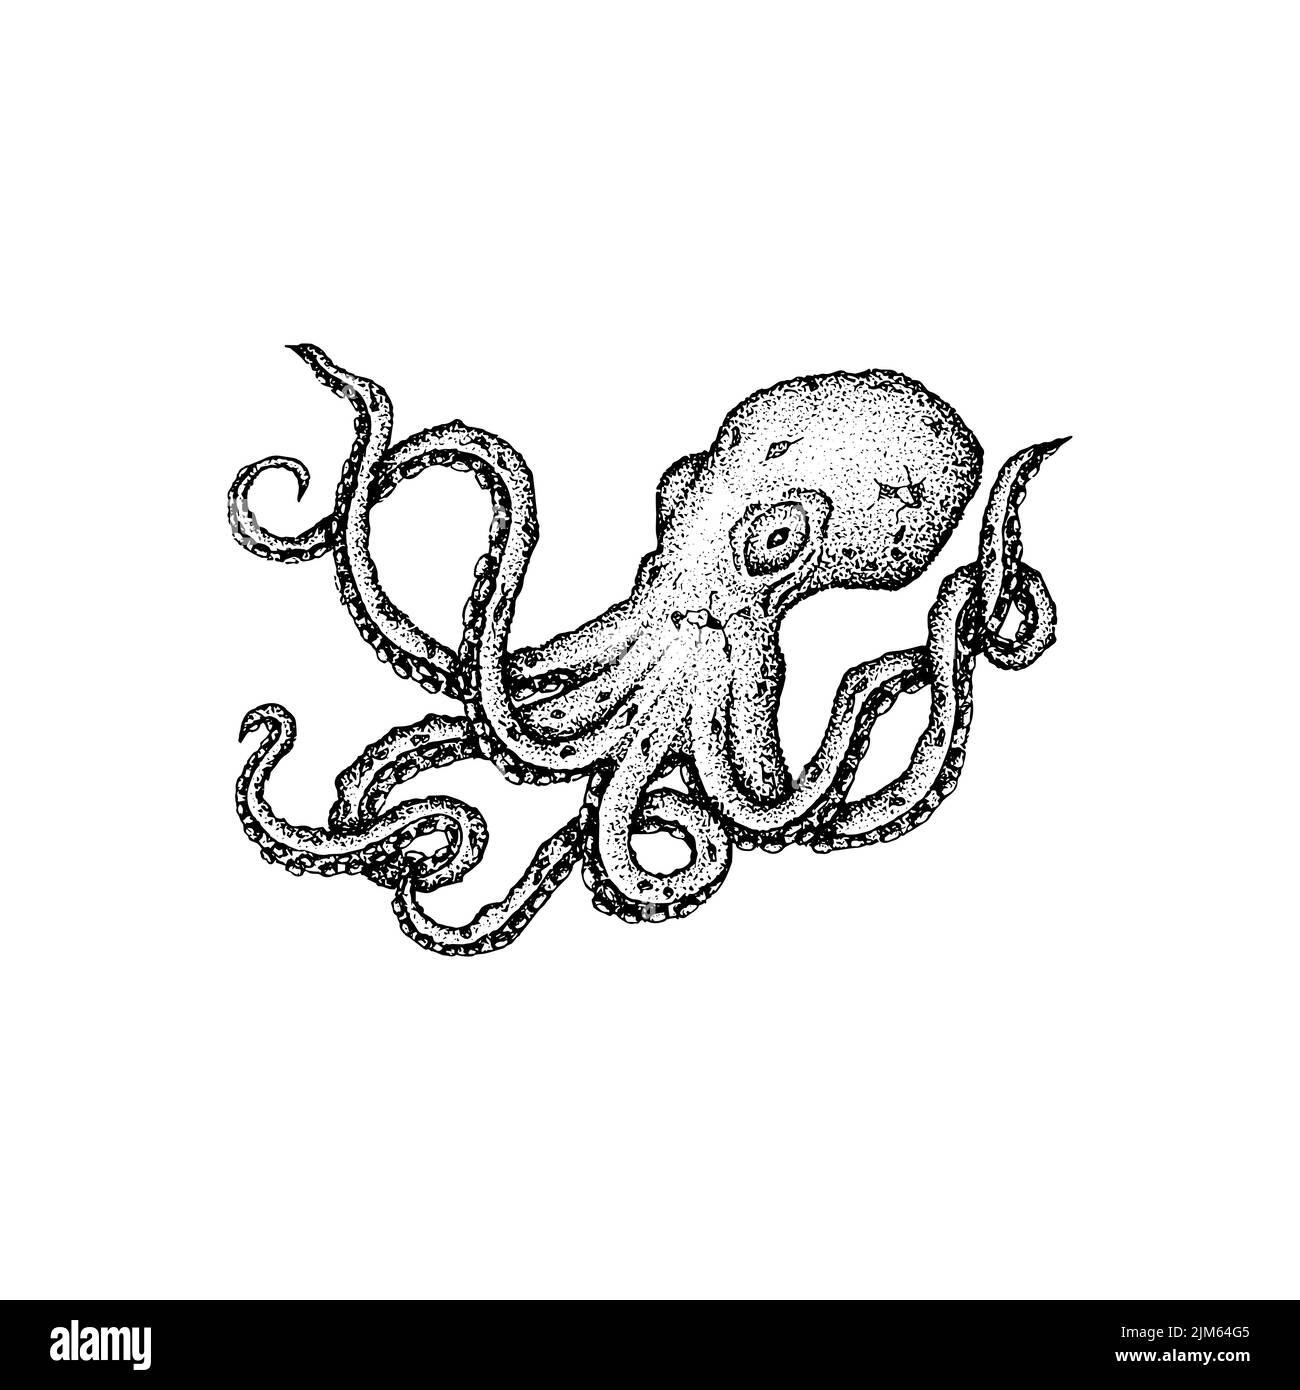 Dessin de la Dotwork d'Octopus. Illustration vectorielle d'objets dessinés à la main. Illustration de Vecteur